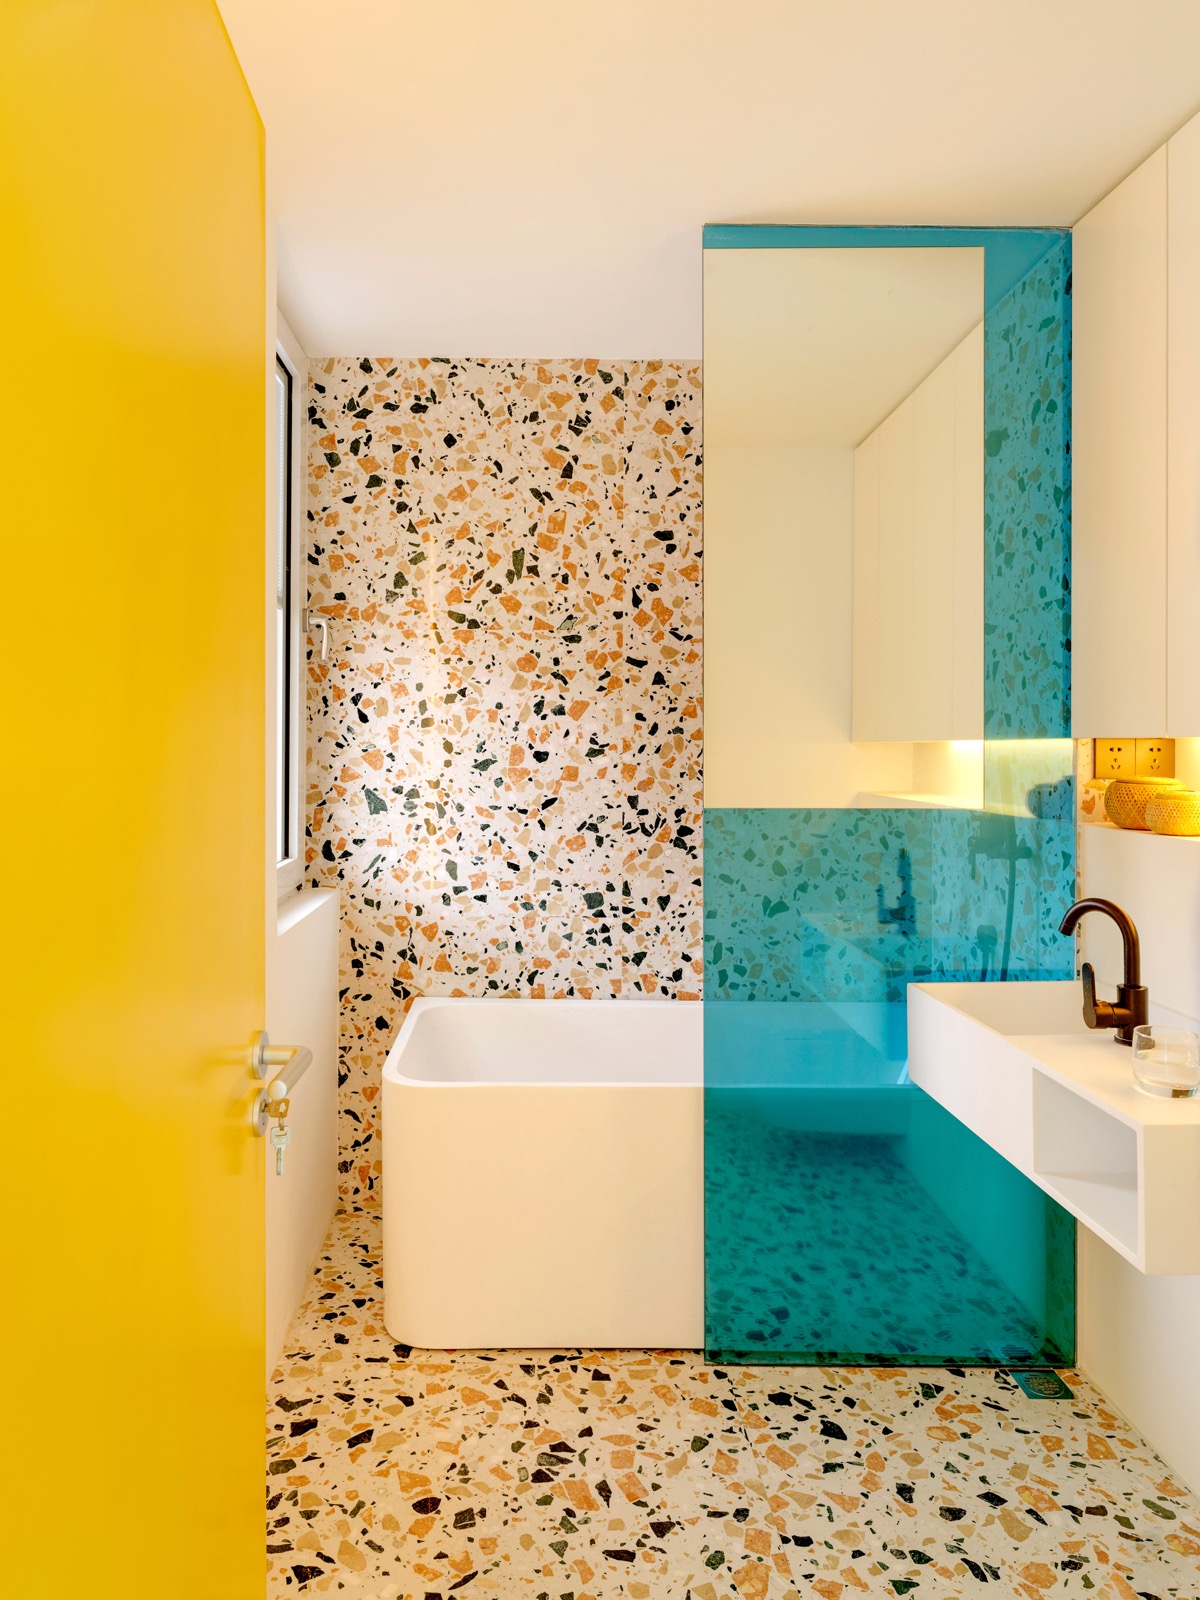 Phòng tắm có sự kết nối về tổng thể với bếp nhờ màu xanh ngọc và hoa văn terrazzo.